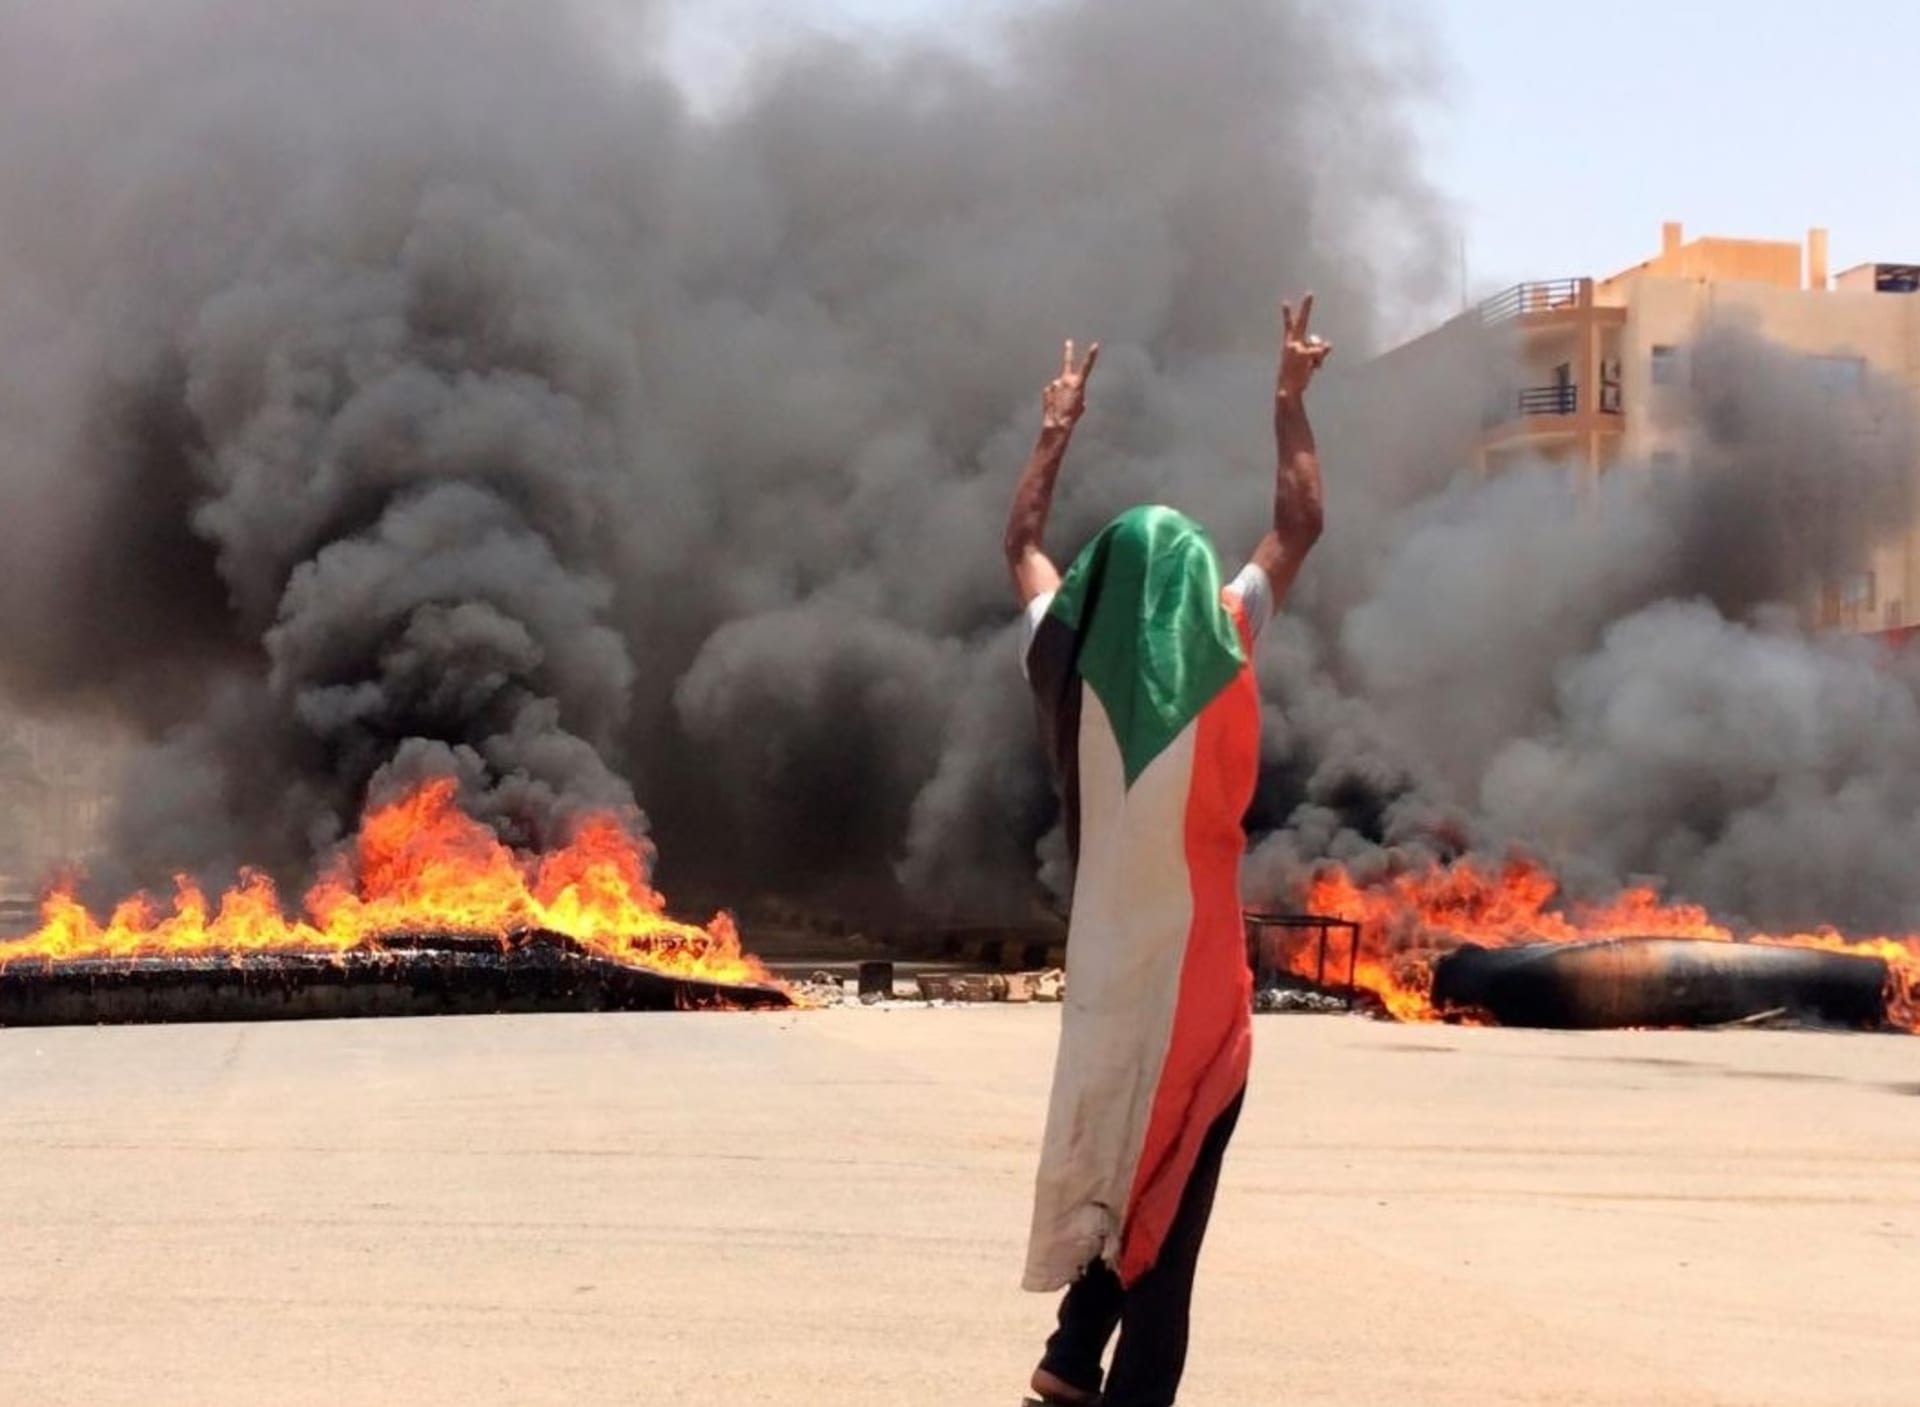 Ilustrační foto: súdánské demonstrace